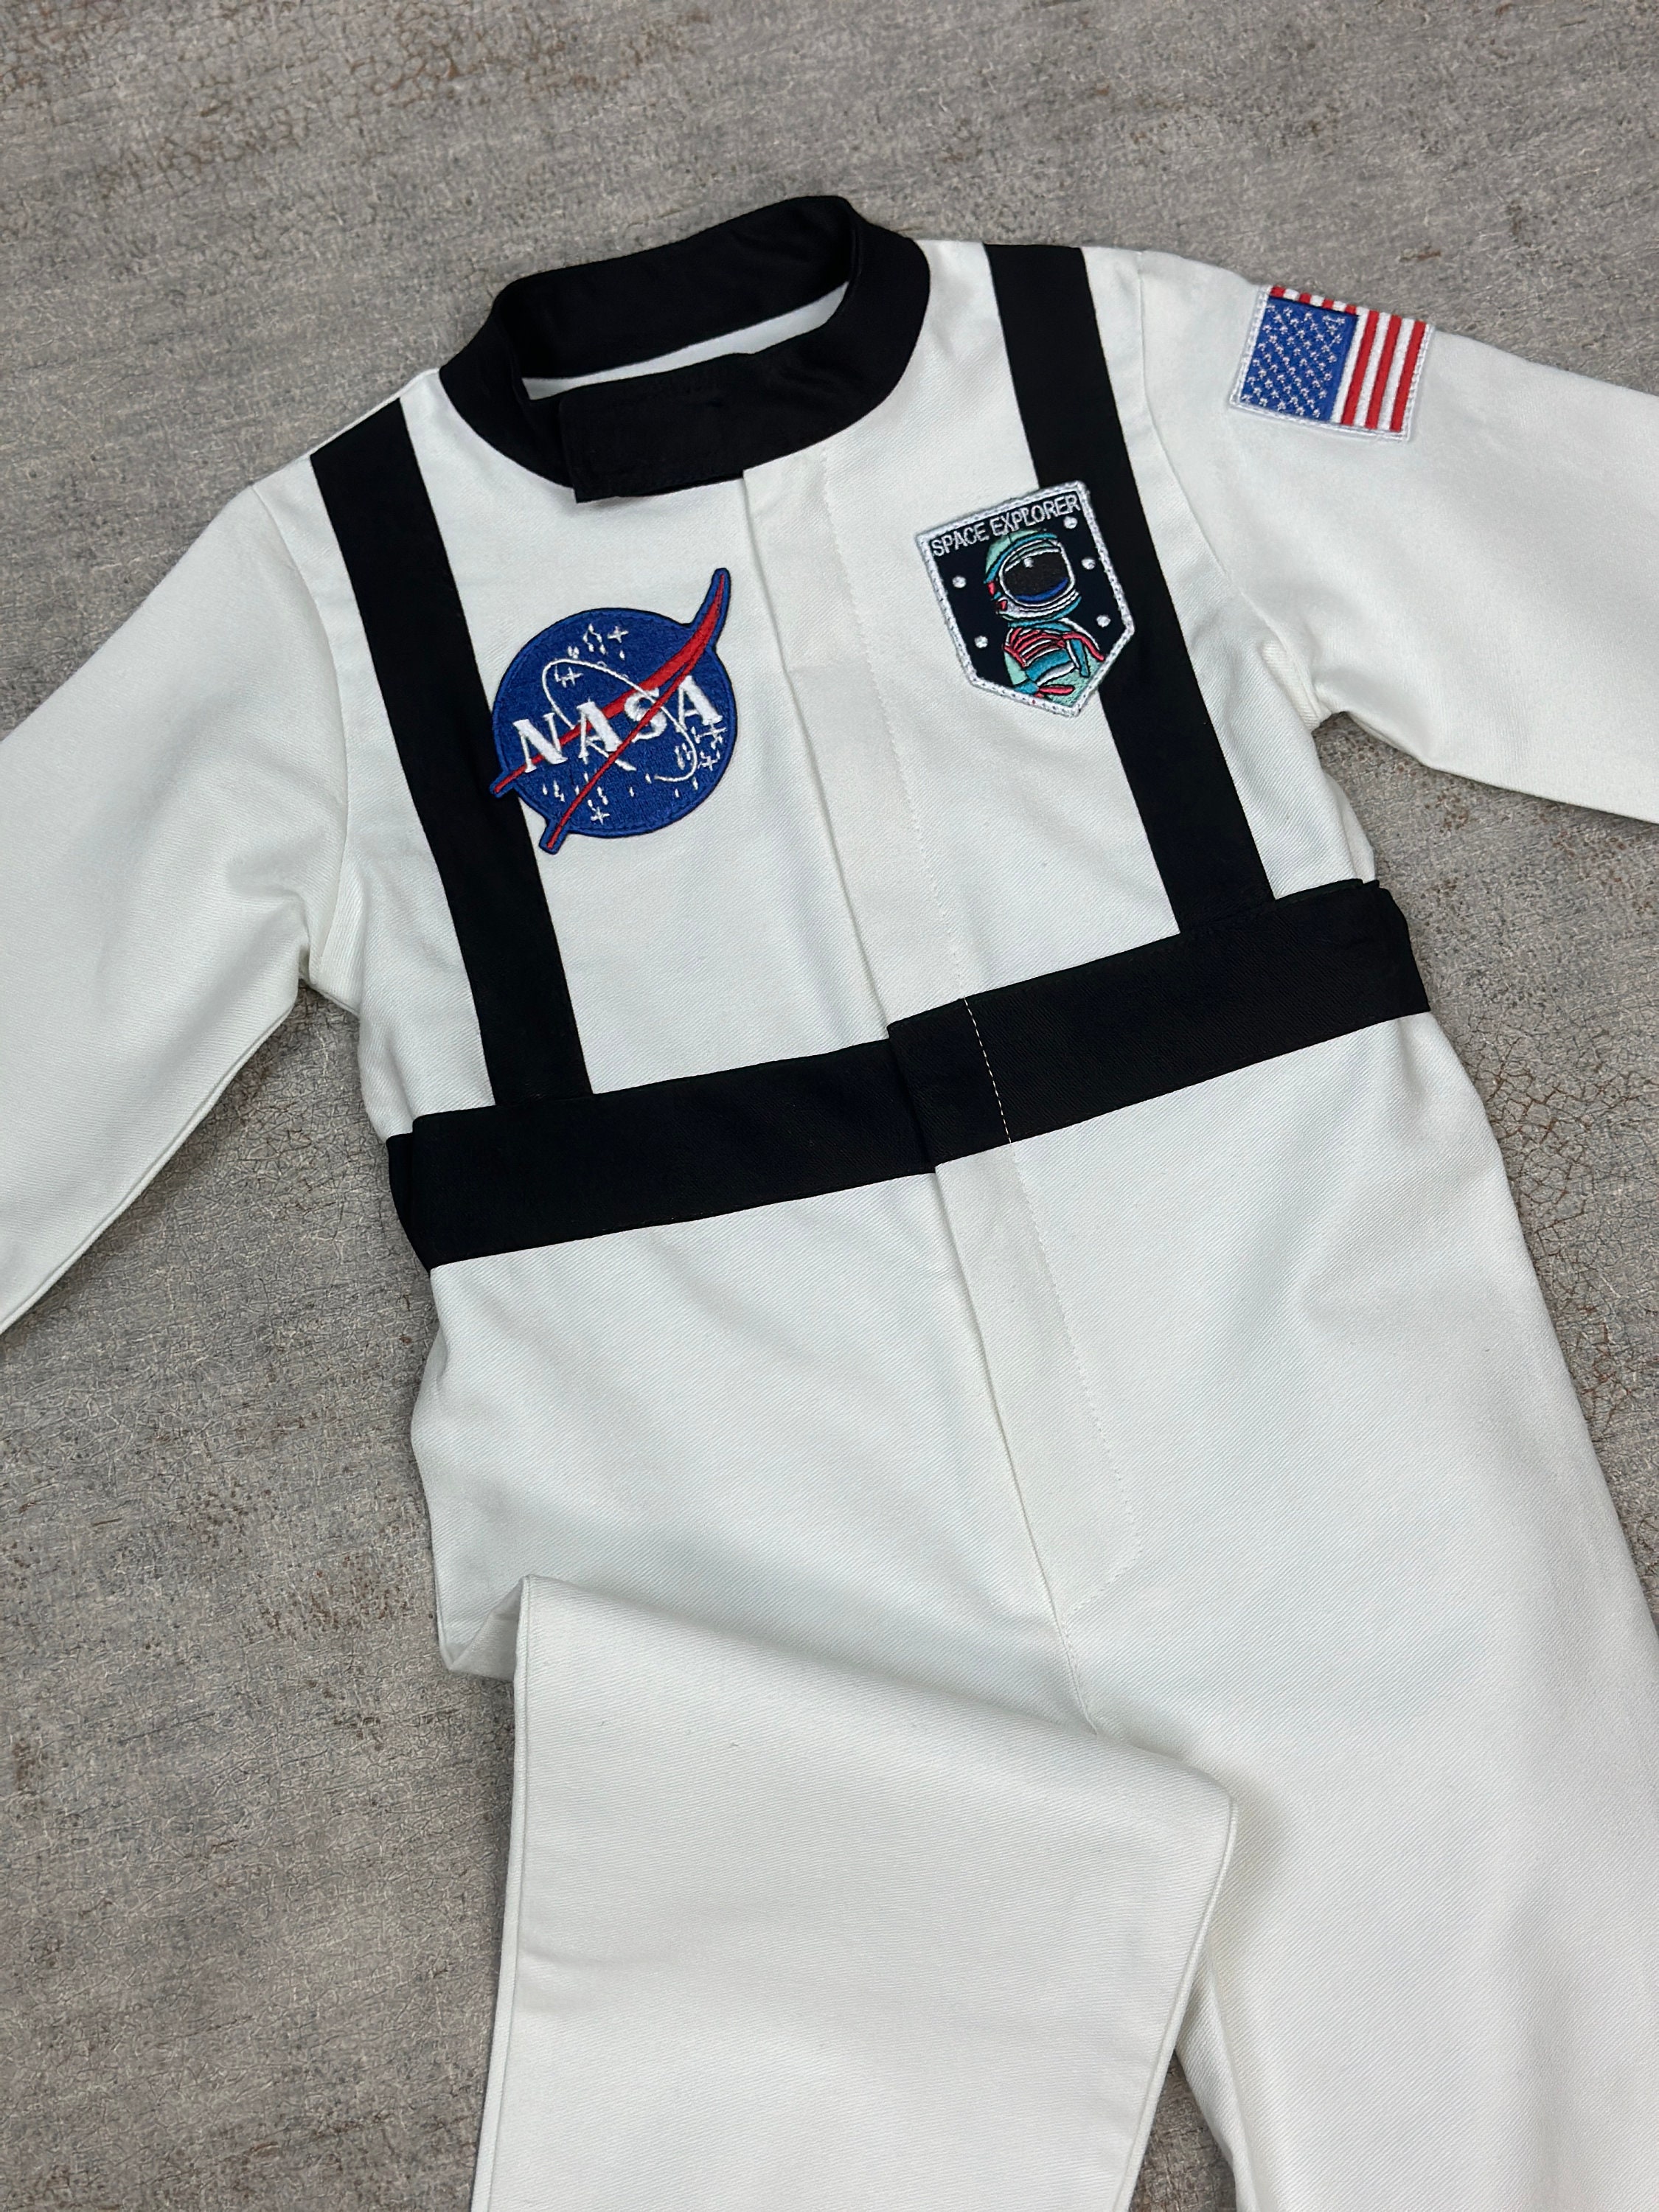 Vamei Costume Astronaute Enfant Déguisement Astronaute avec